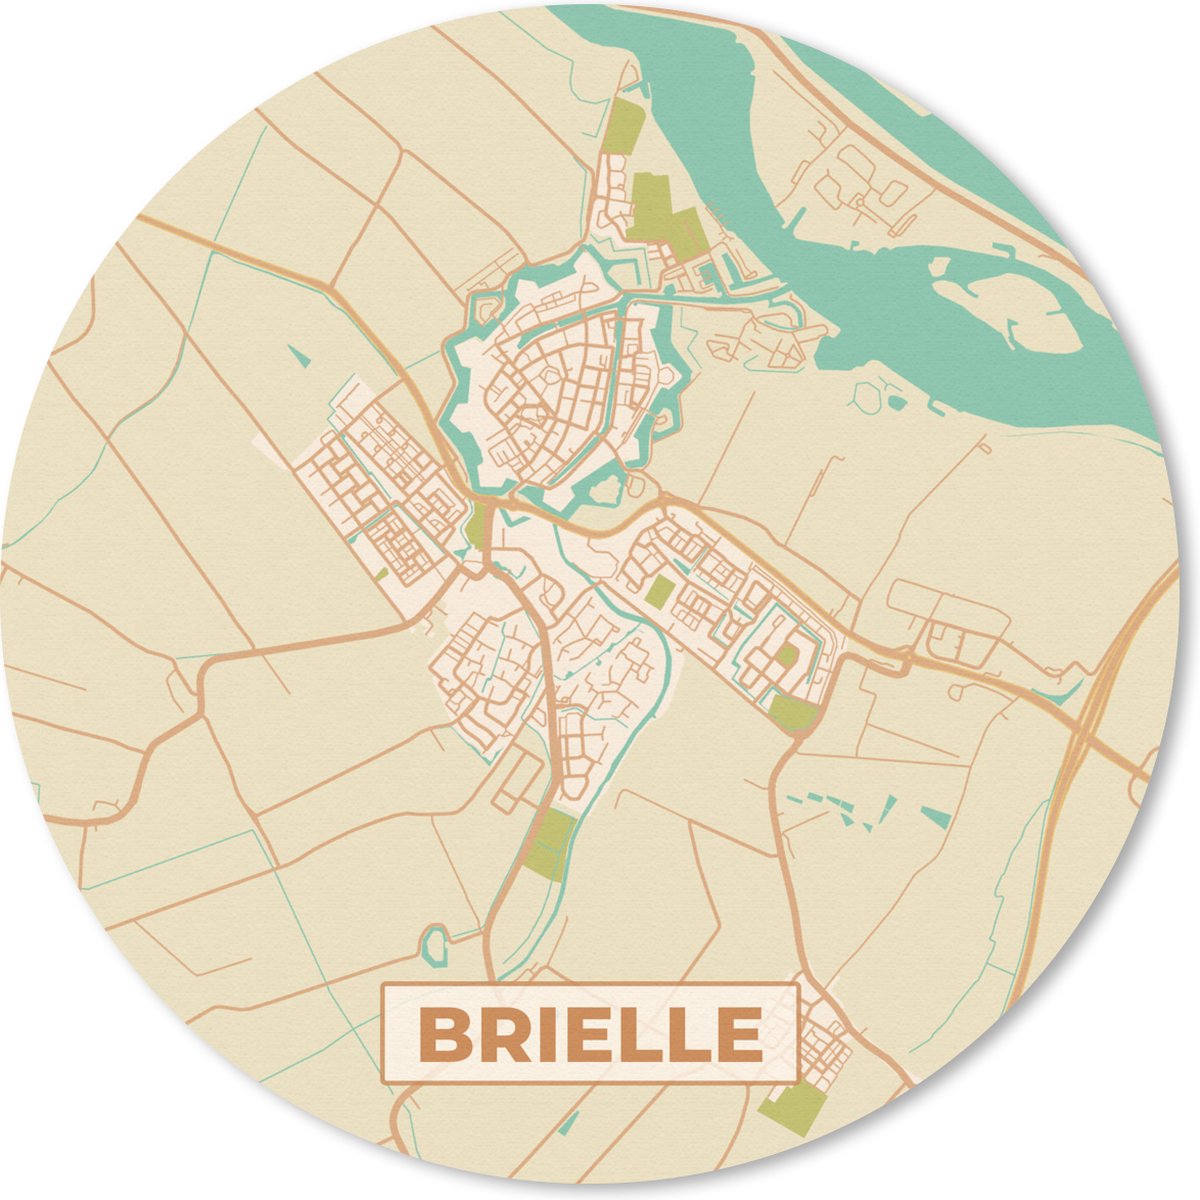 Muismat - Mousepad - Rond - Brielle - Kaart - Stadskaart - Plattegrond - Nederland - 20x20 cm - Ronde muismat